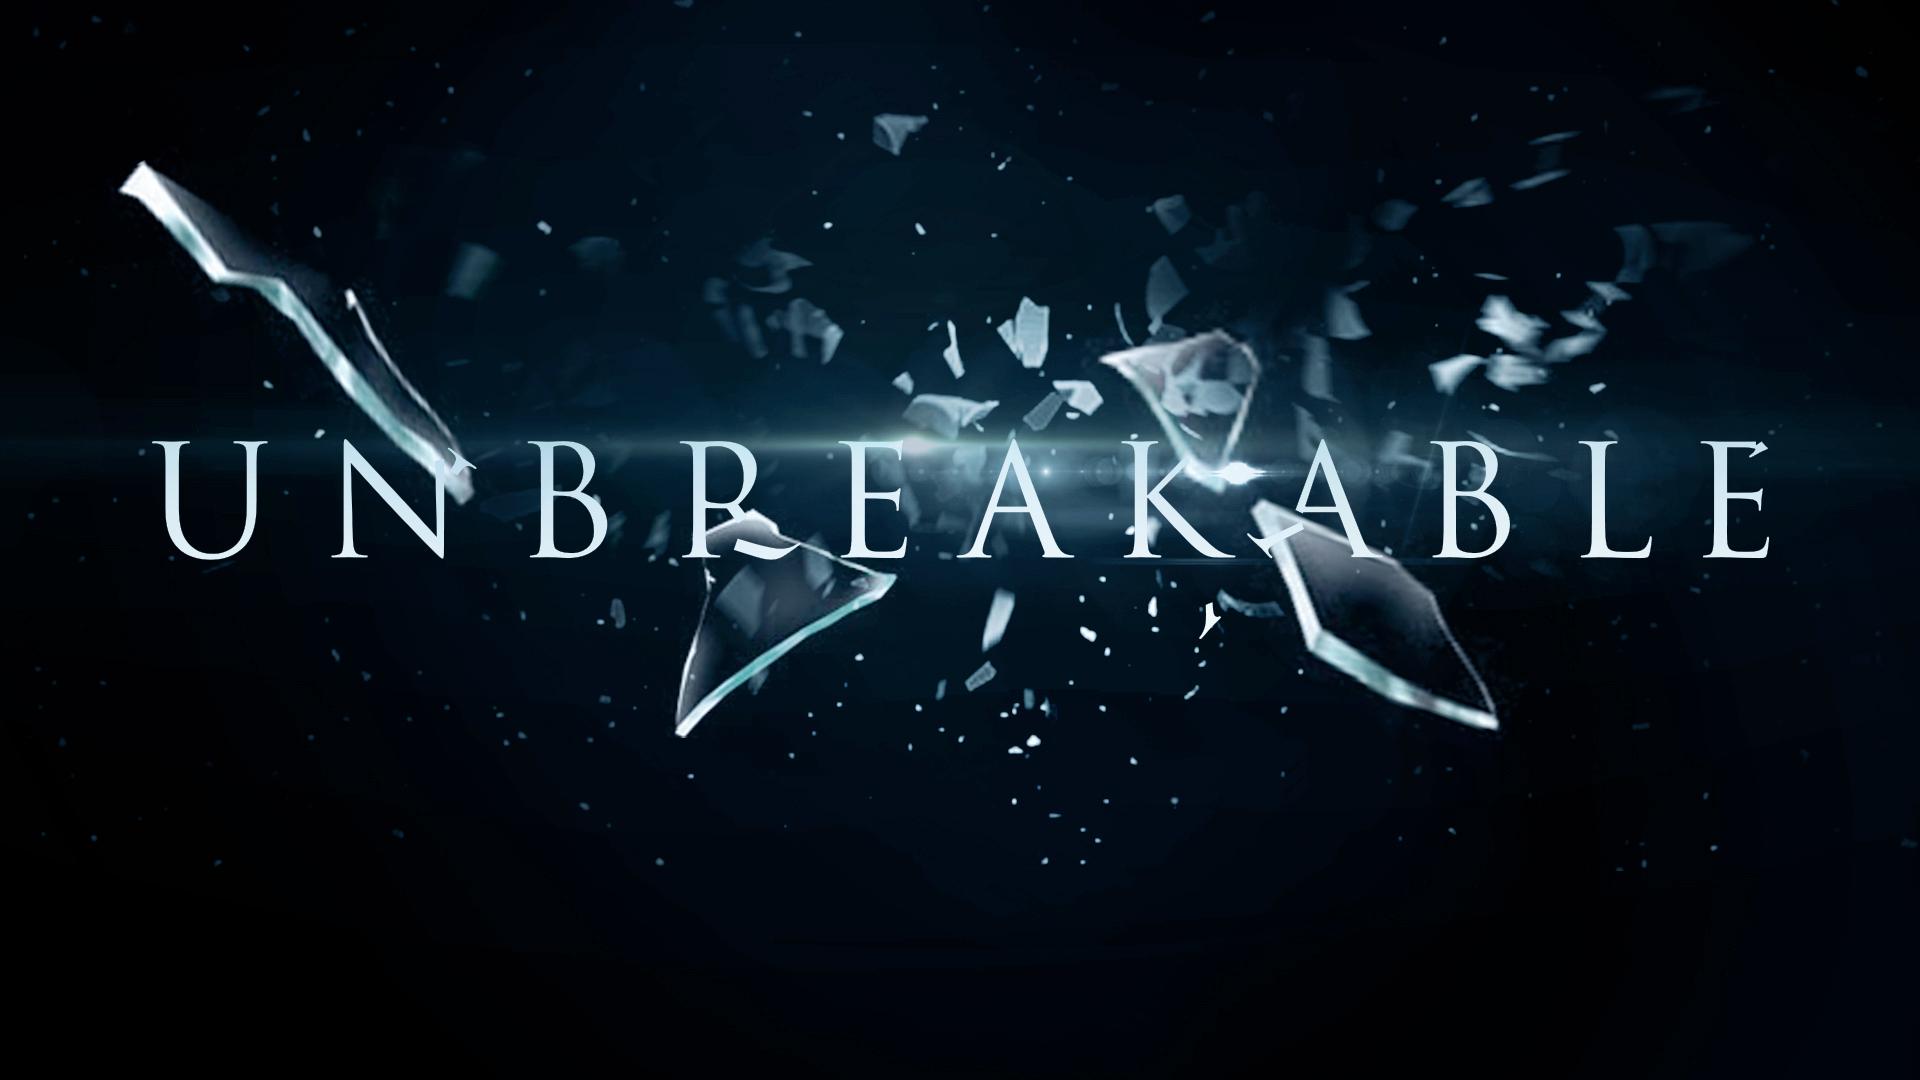 Unbreakable / A sebezhetetlen (2000)